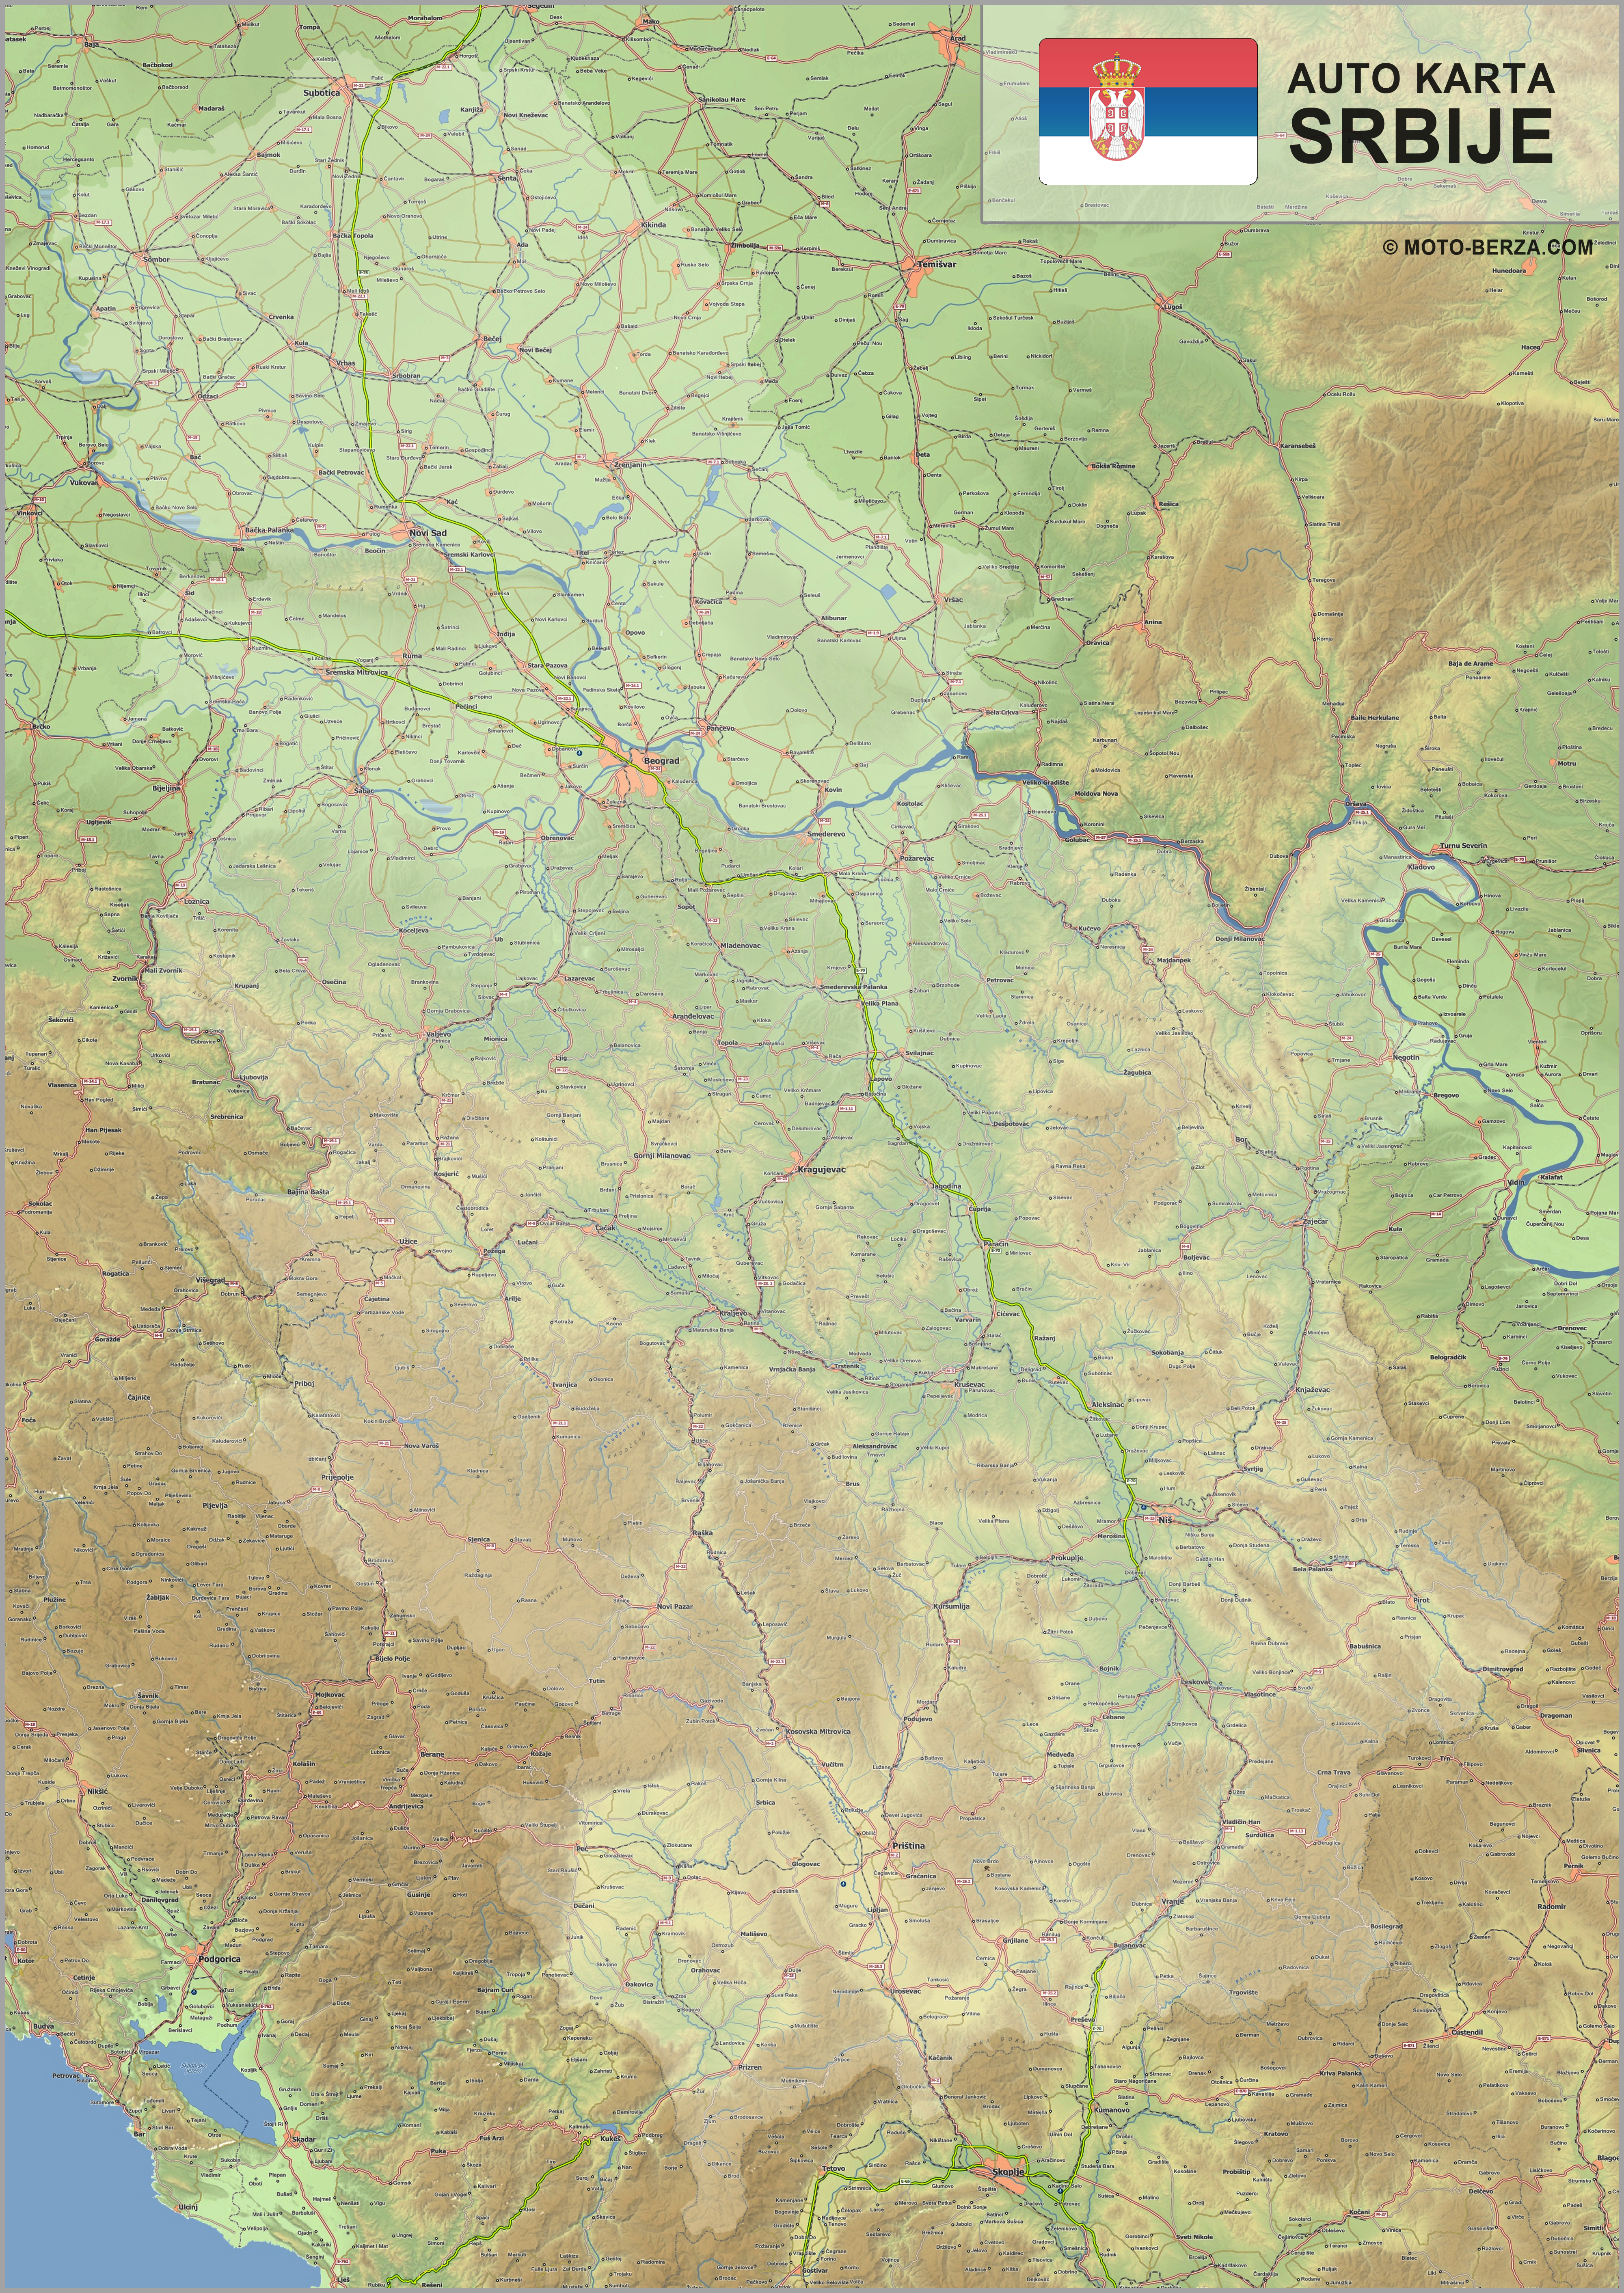 geografska mapa srbije satelit Mapa srbije   Auto karta Srbije   Geografska karta sa putevima geografska mapa srbije satelit